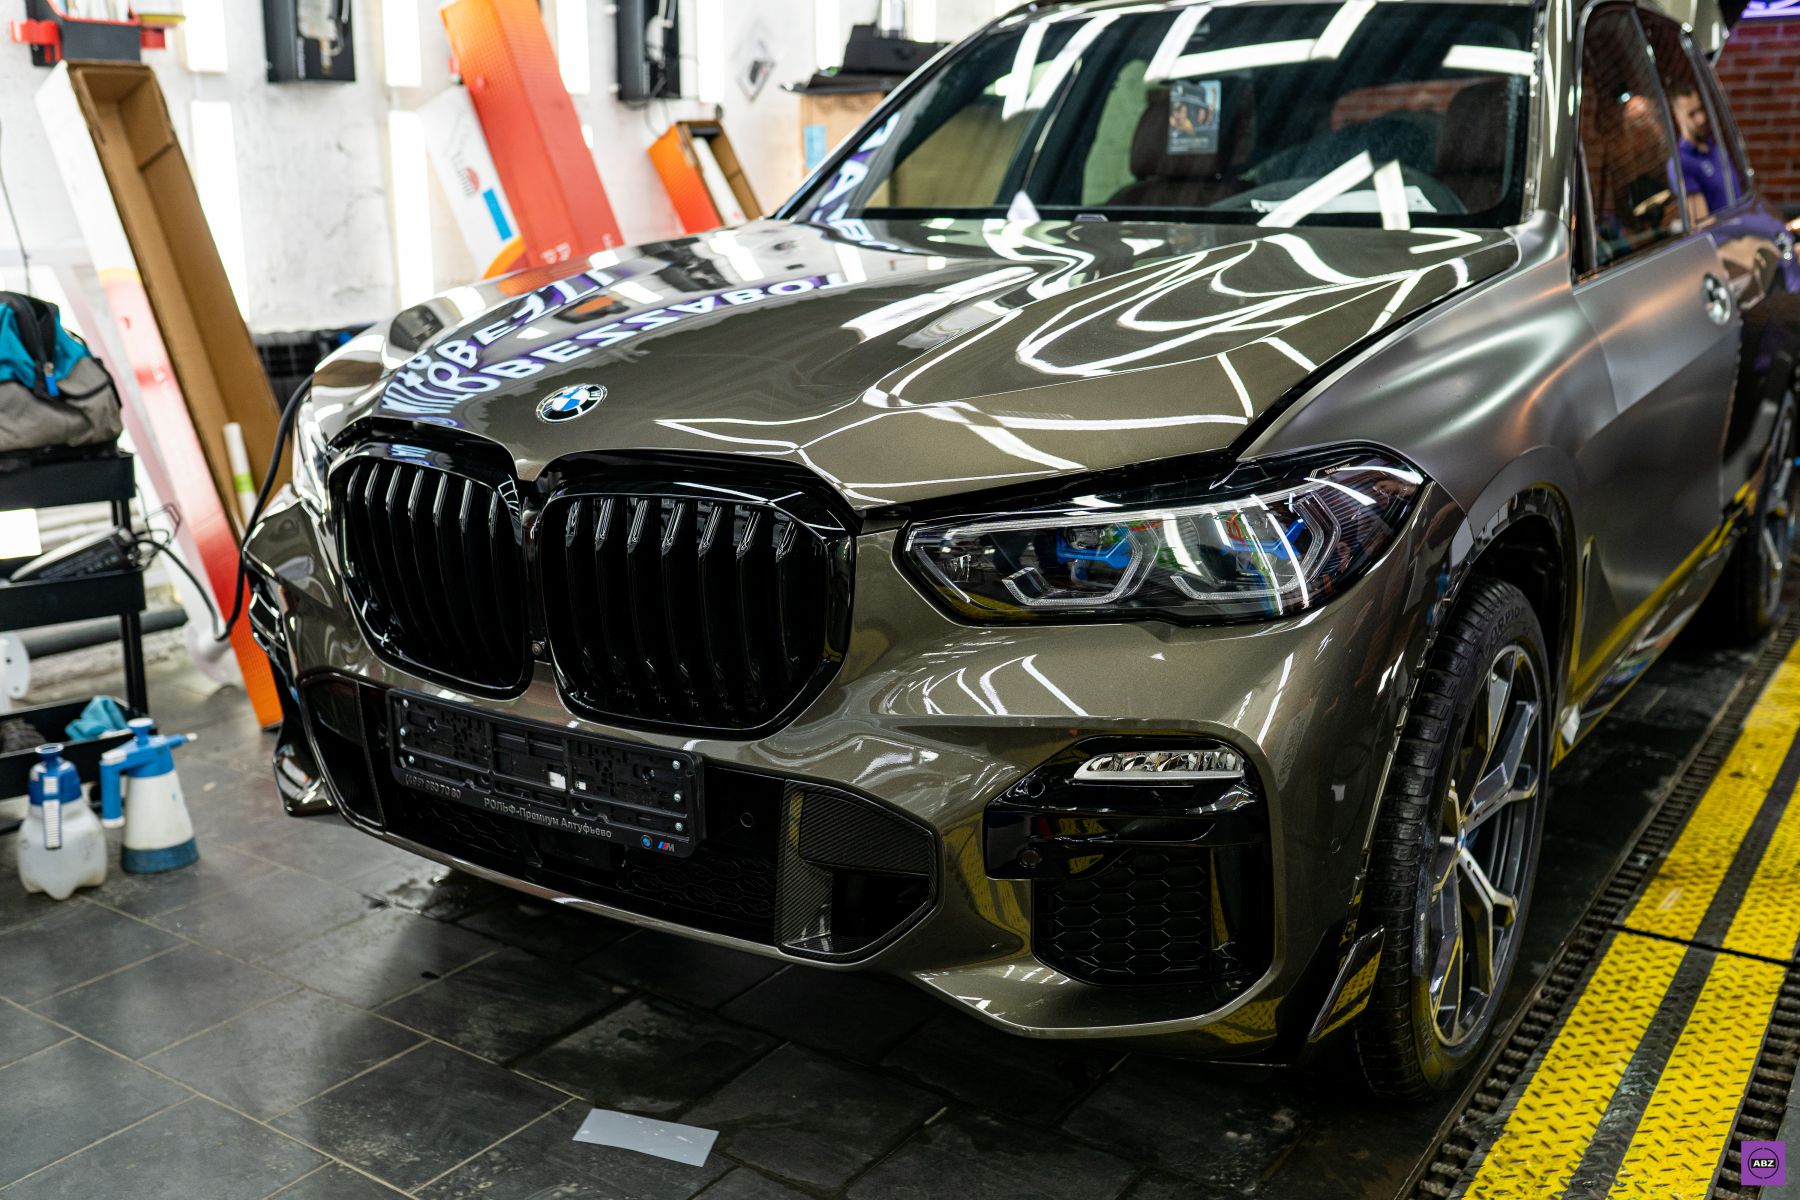 Фото BMW X5 Manhattan Metallic в глянце или матовый стайлинг?